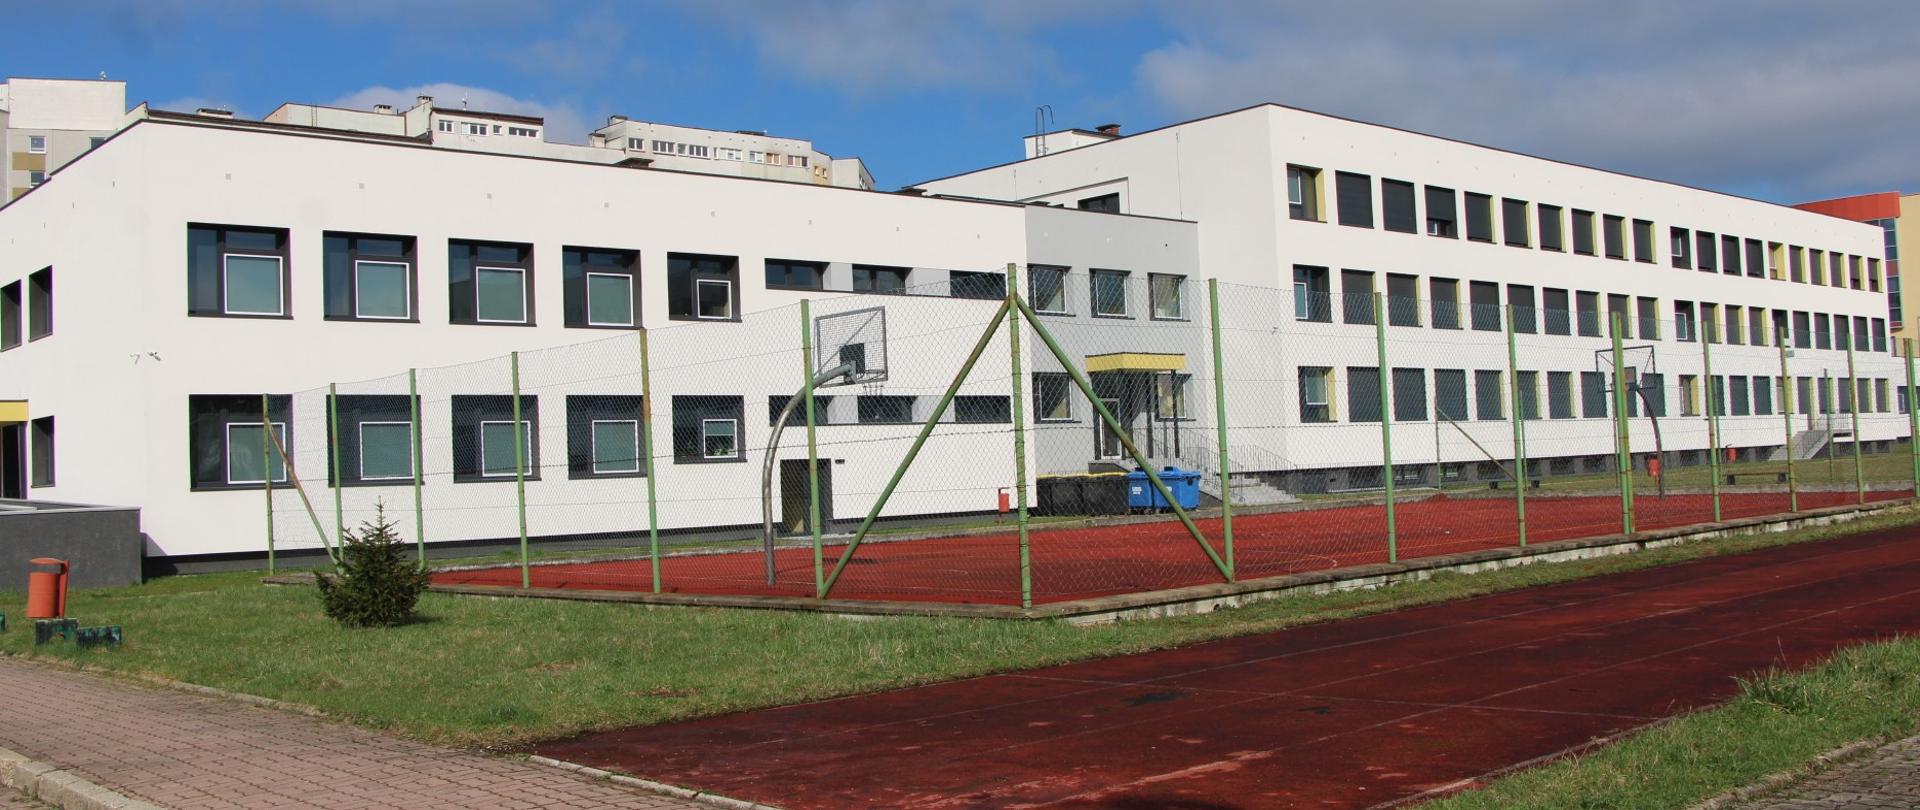 Wielopiętrowy budynek, z białą elewacją , na pierwszym planie obiekty sportowe z boiskiem do koszykówki i bieżnią do biegania.